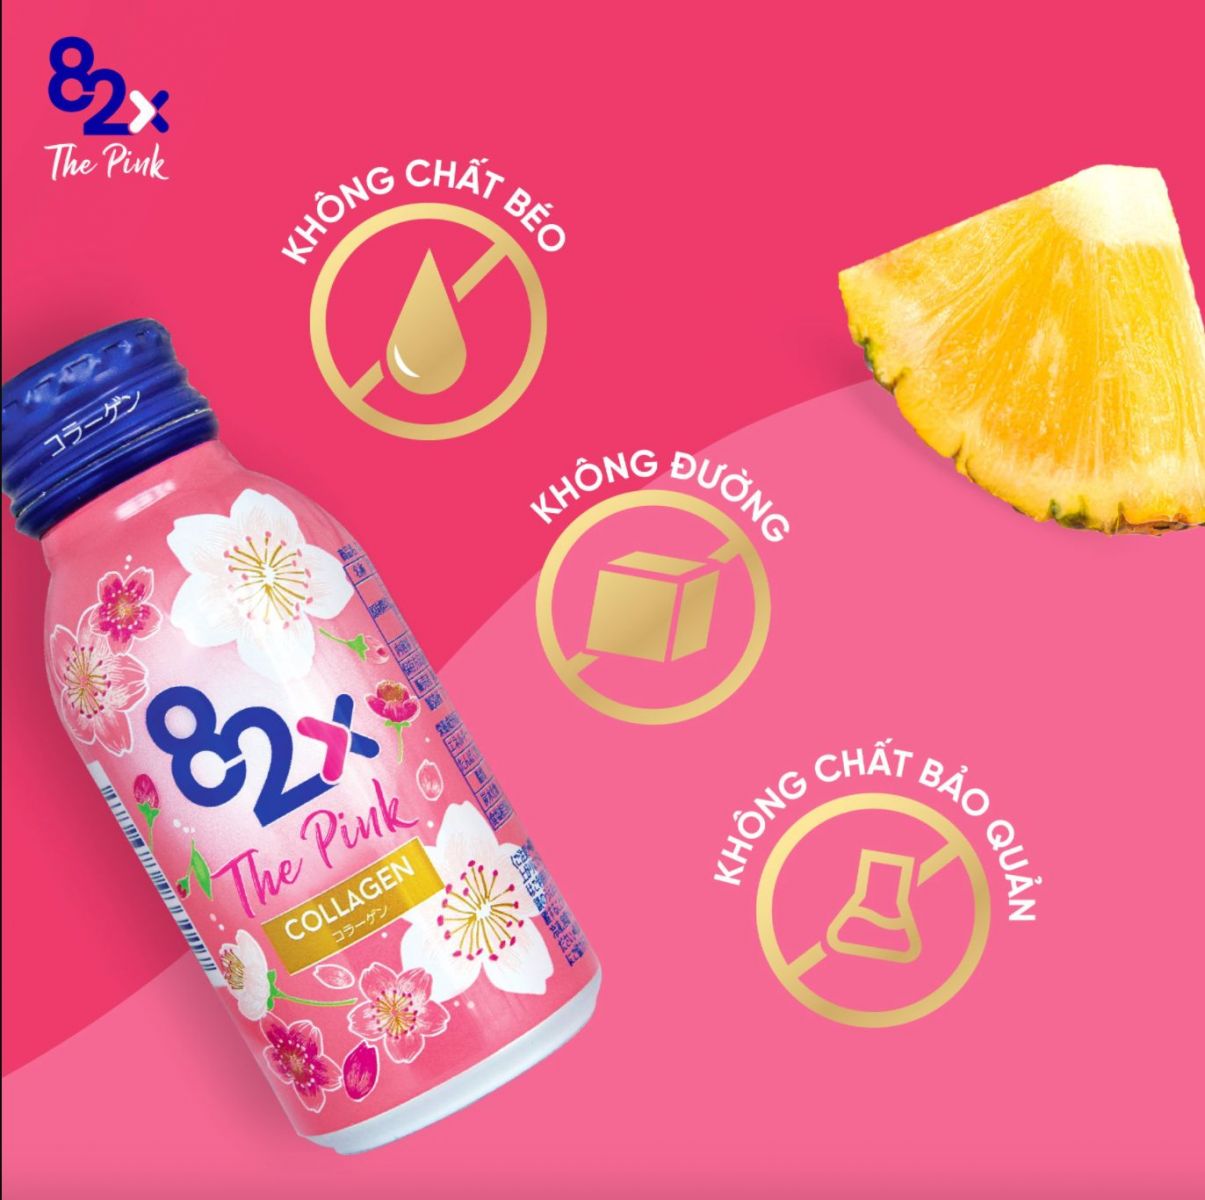 nước uống collagen 82x the pink không chứa chất tạo ngọt, chất bảo quản, chất béo